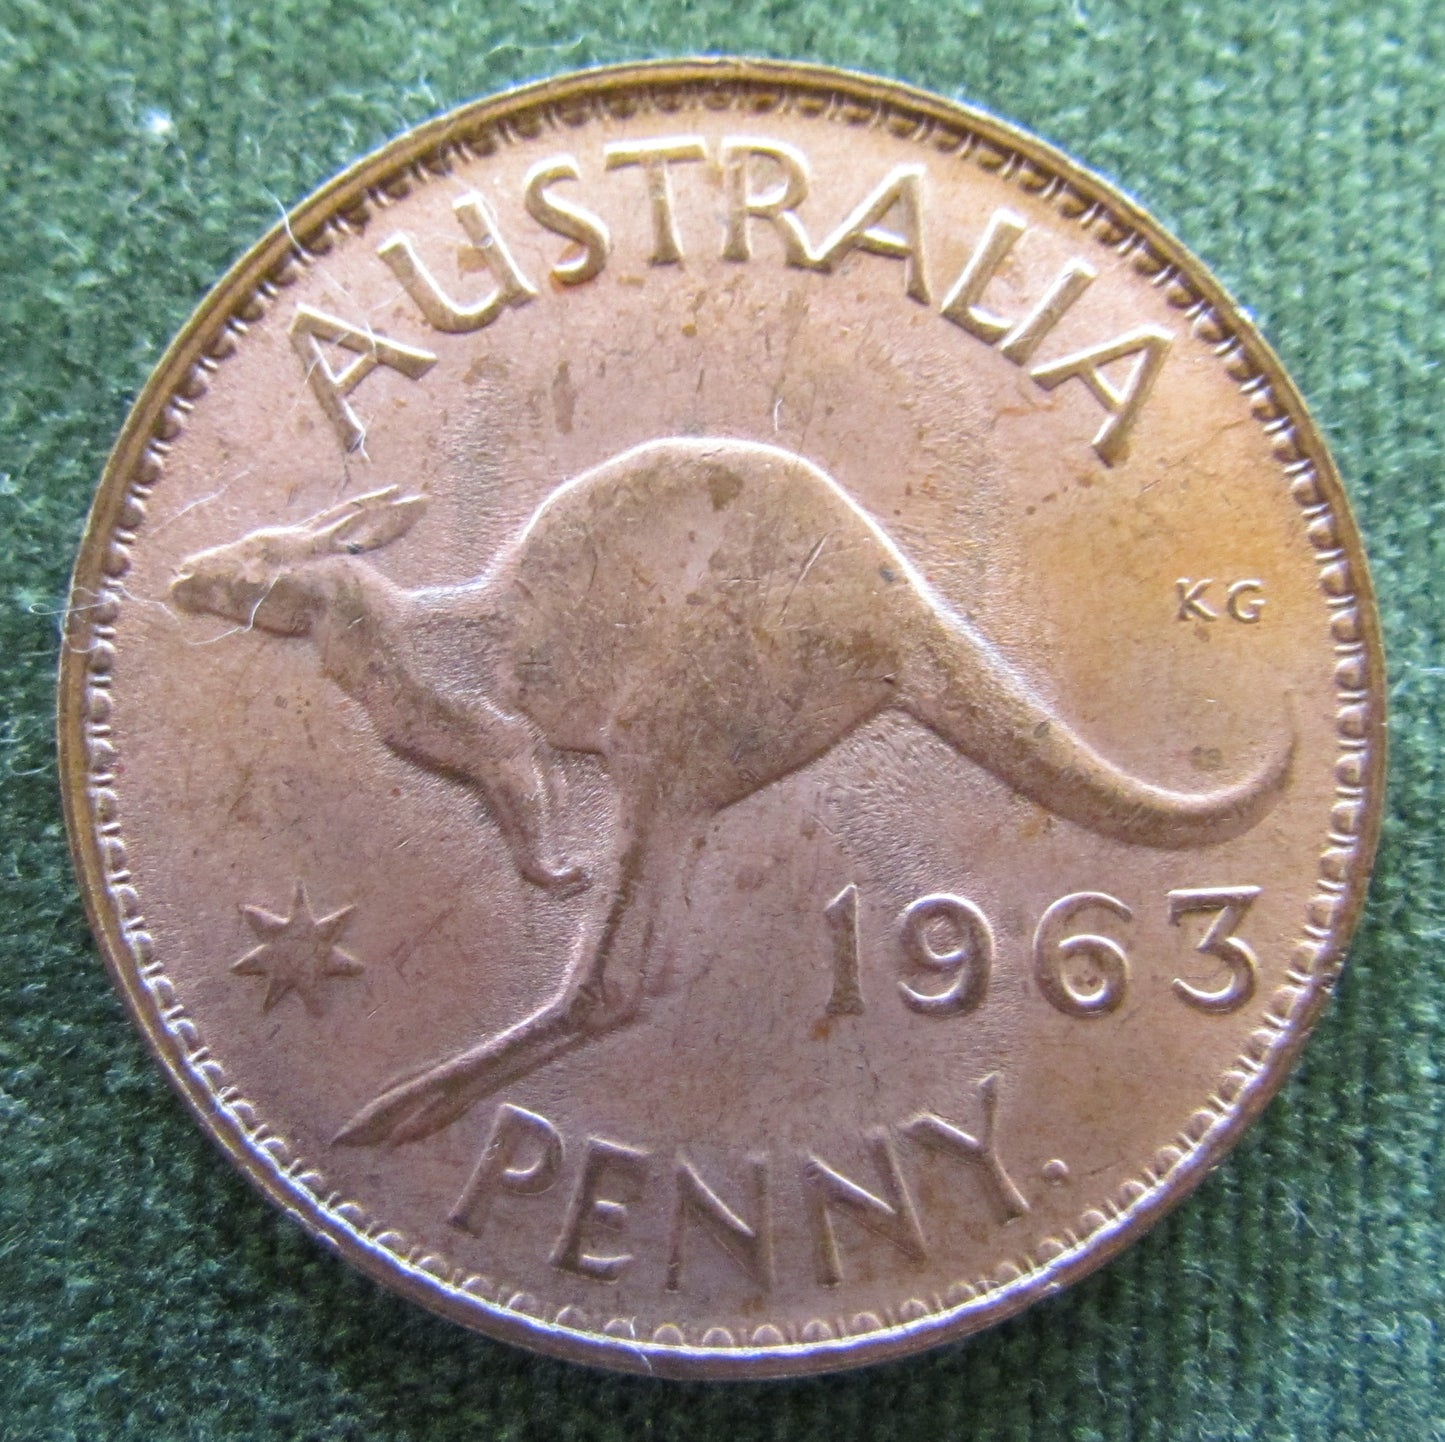 Australian 1963Y. 1d 1 Penny Queen Elizabeth II Coin